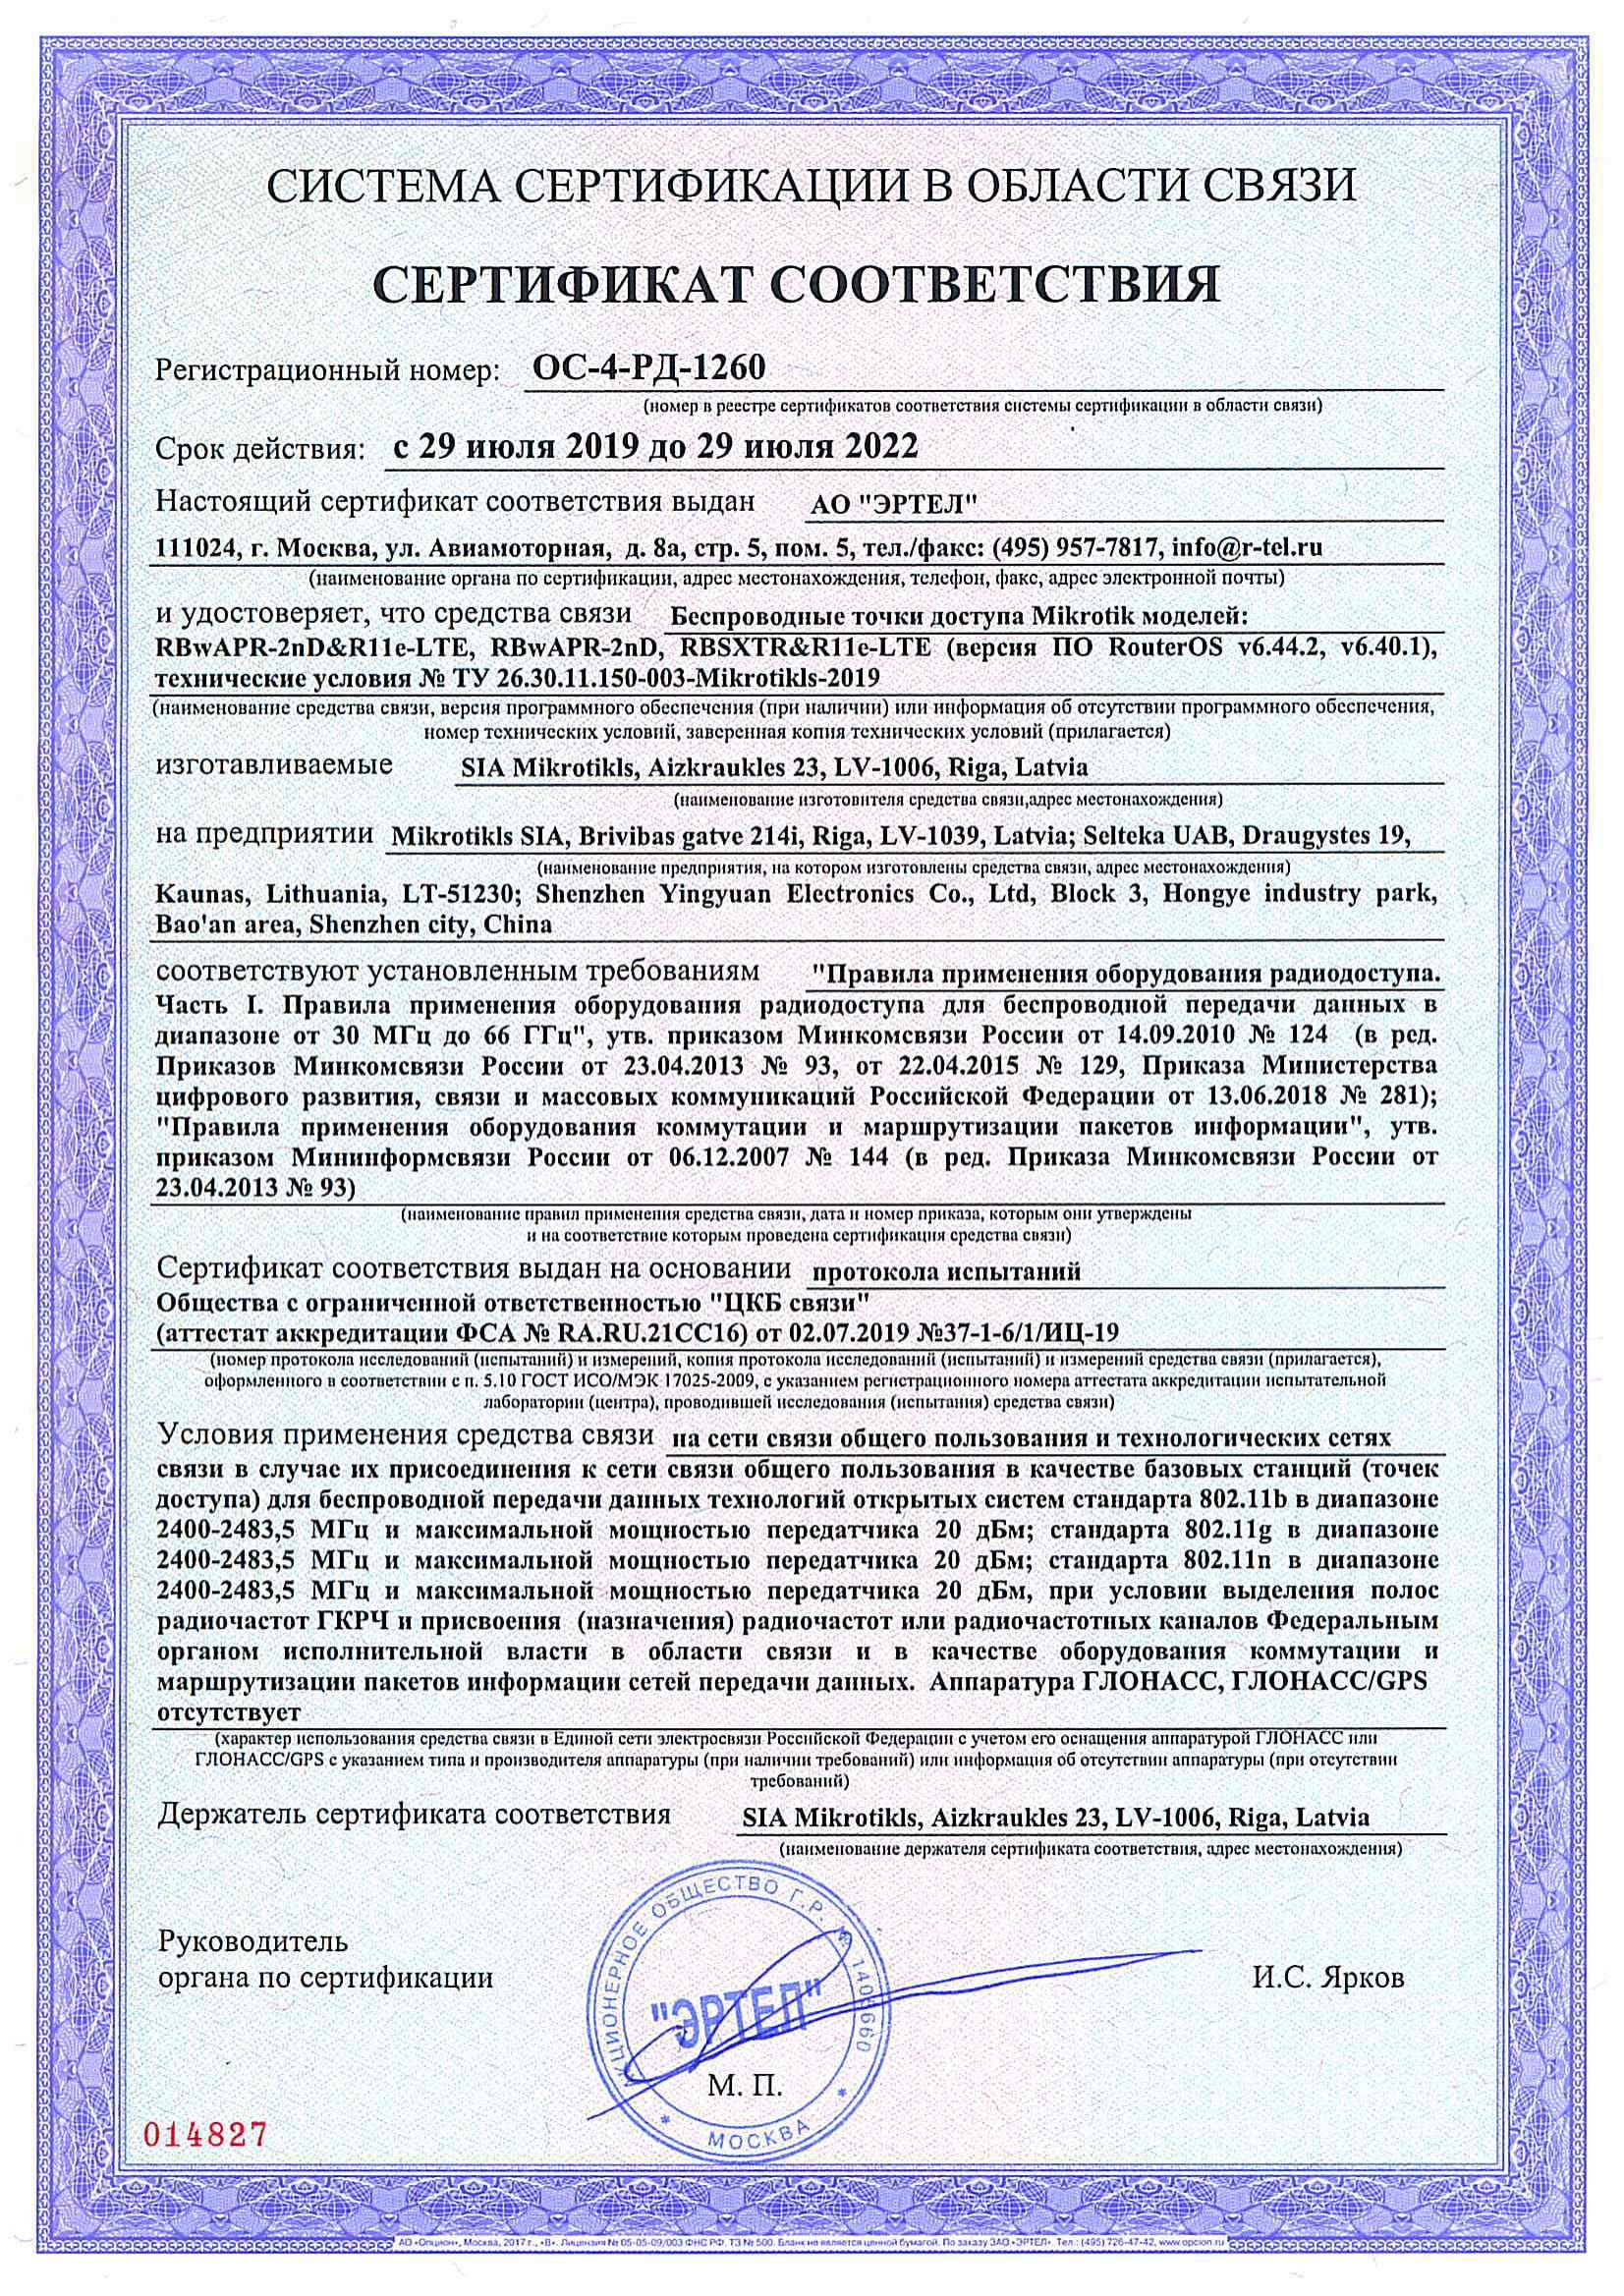 Сертификат соответствия в области связи ОС-4-РД-1260